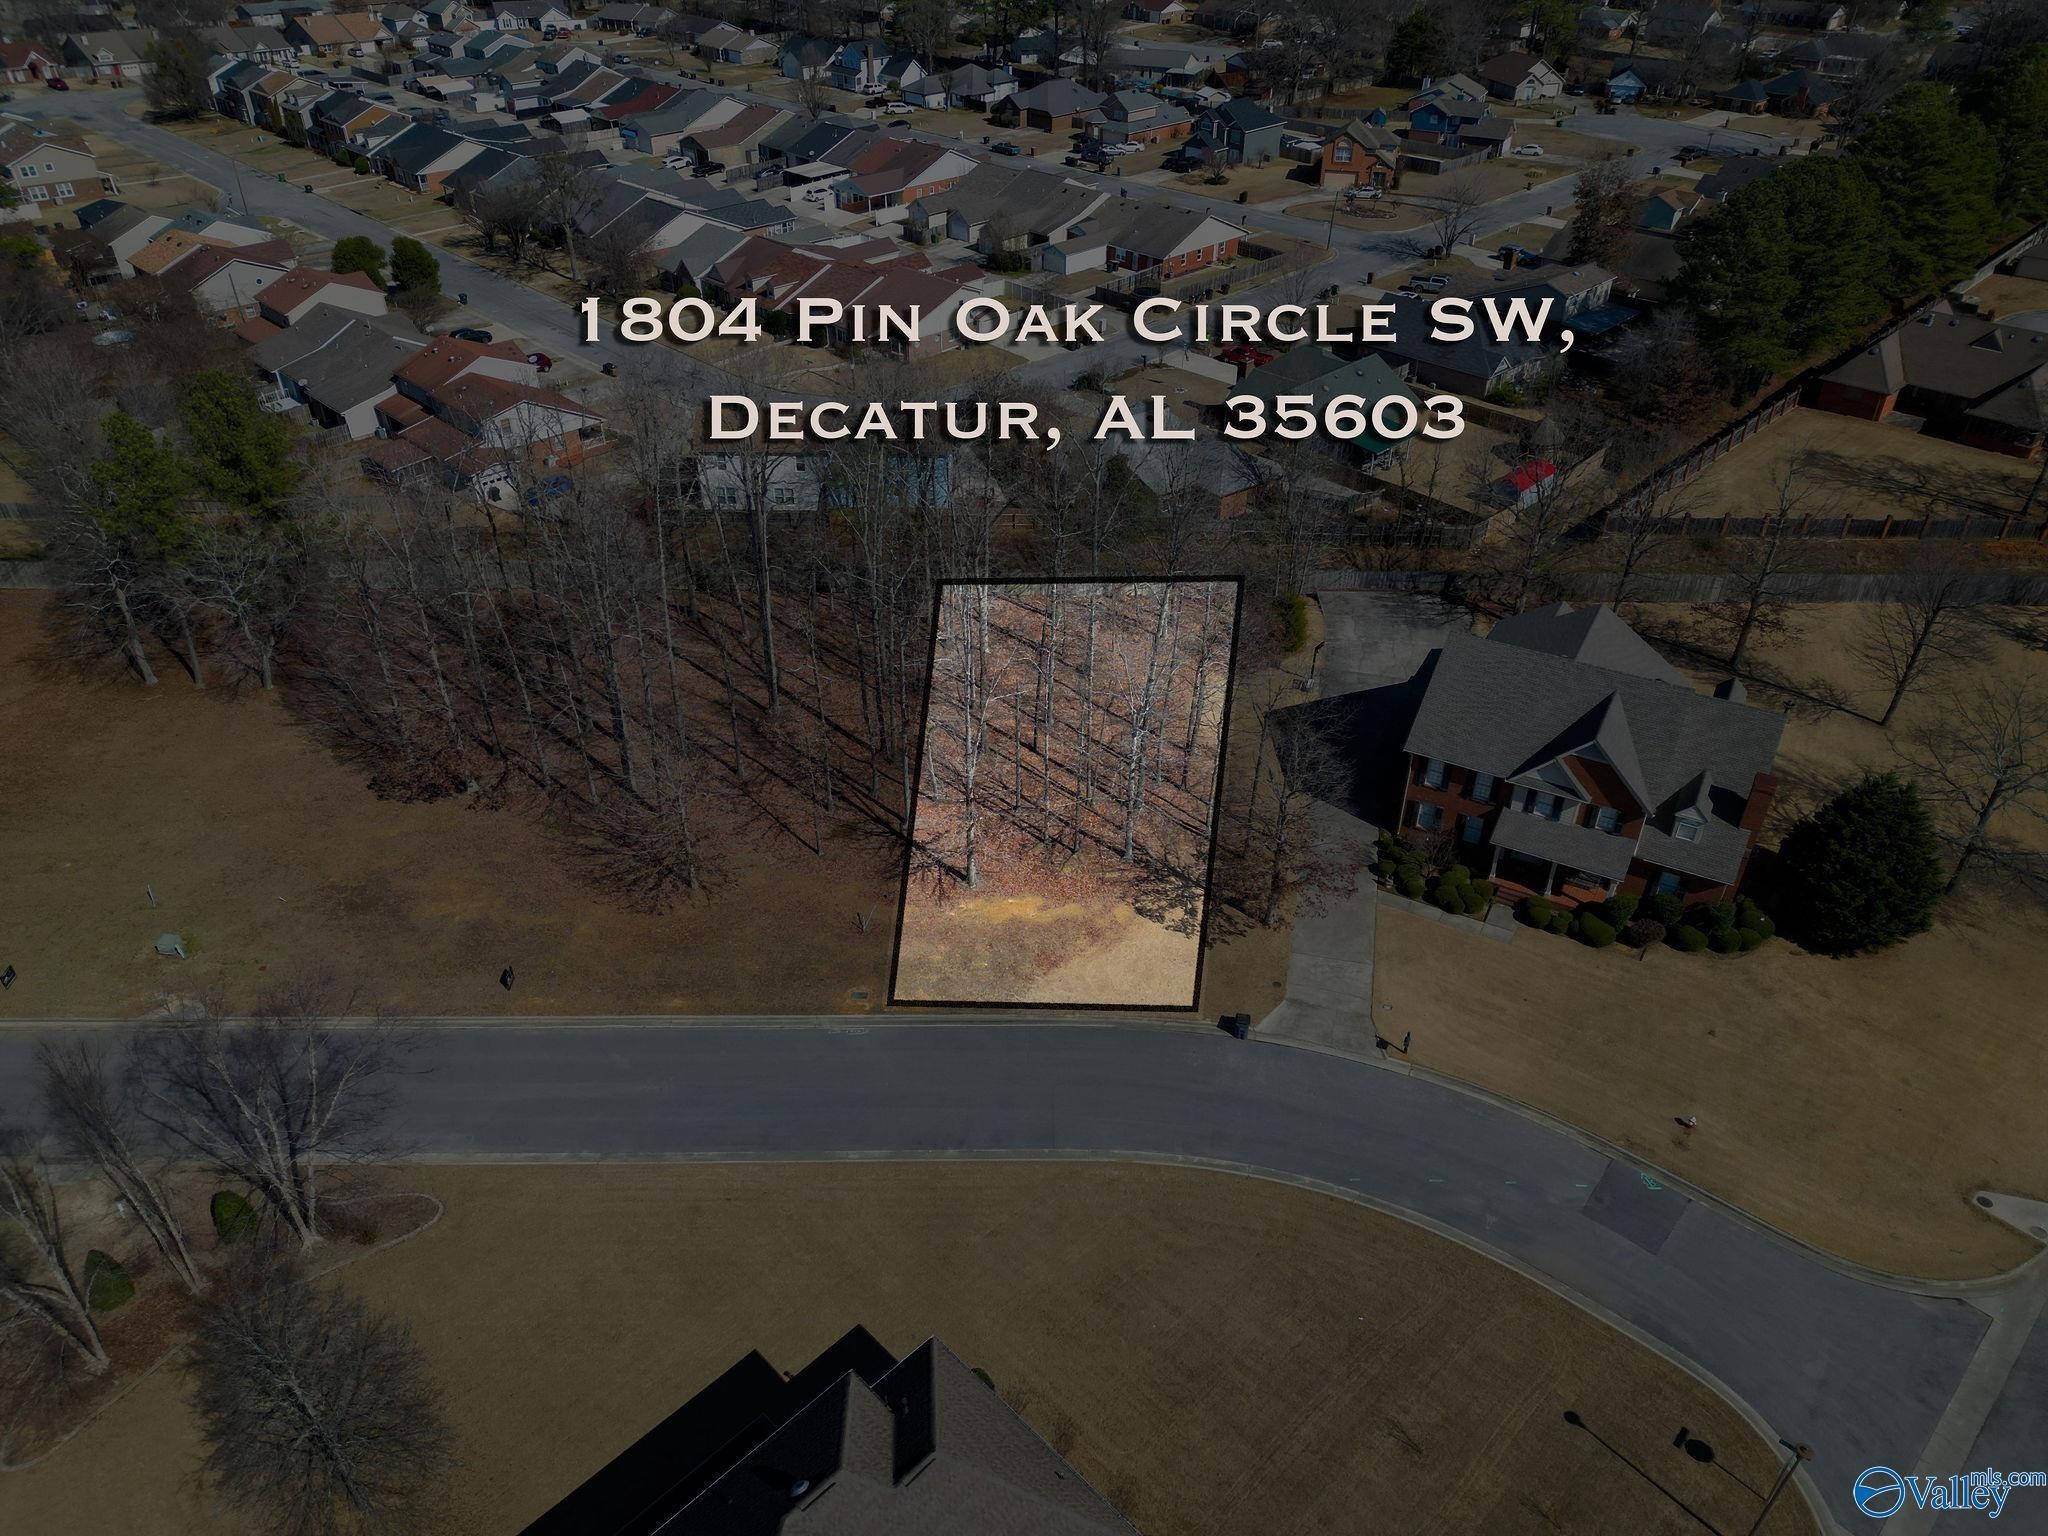 2. 1804 Pin Oak Circle SW